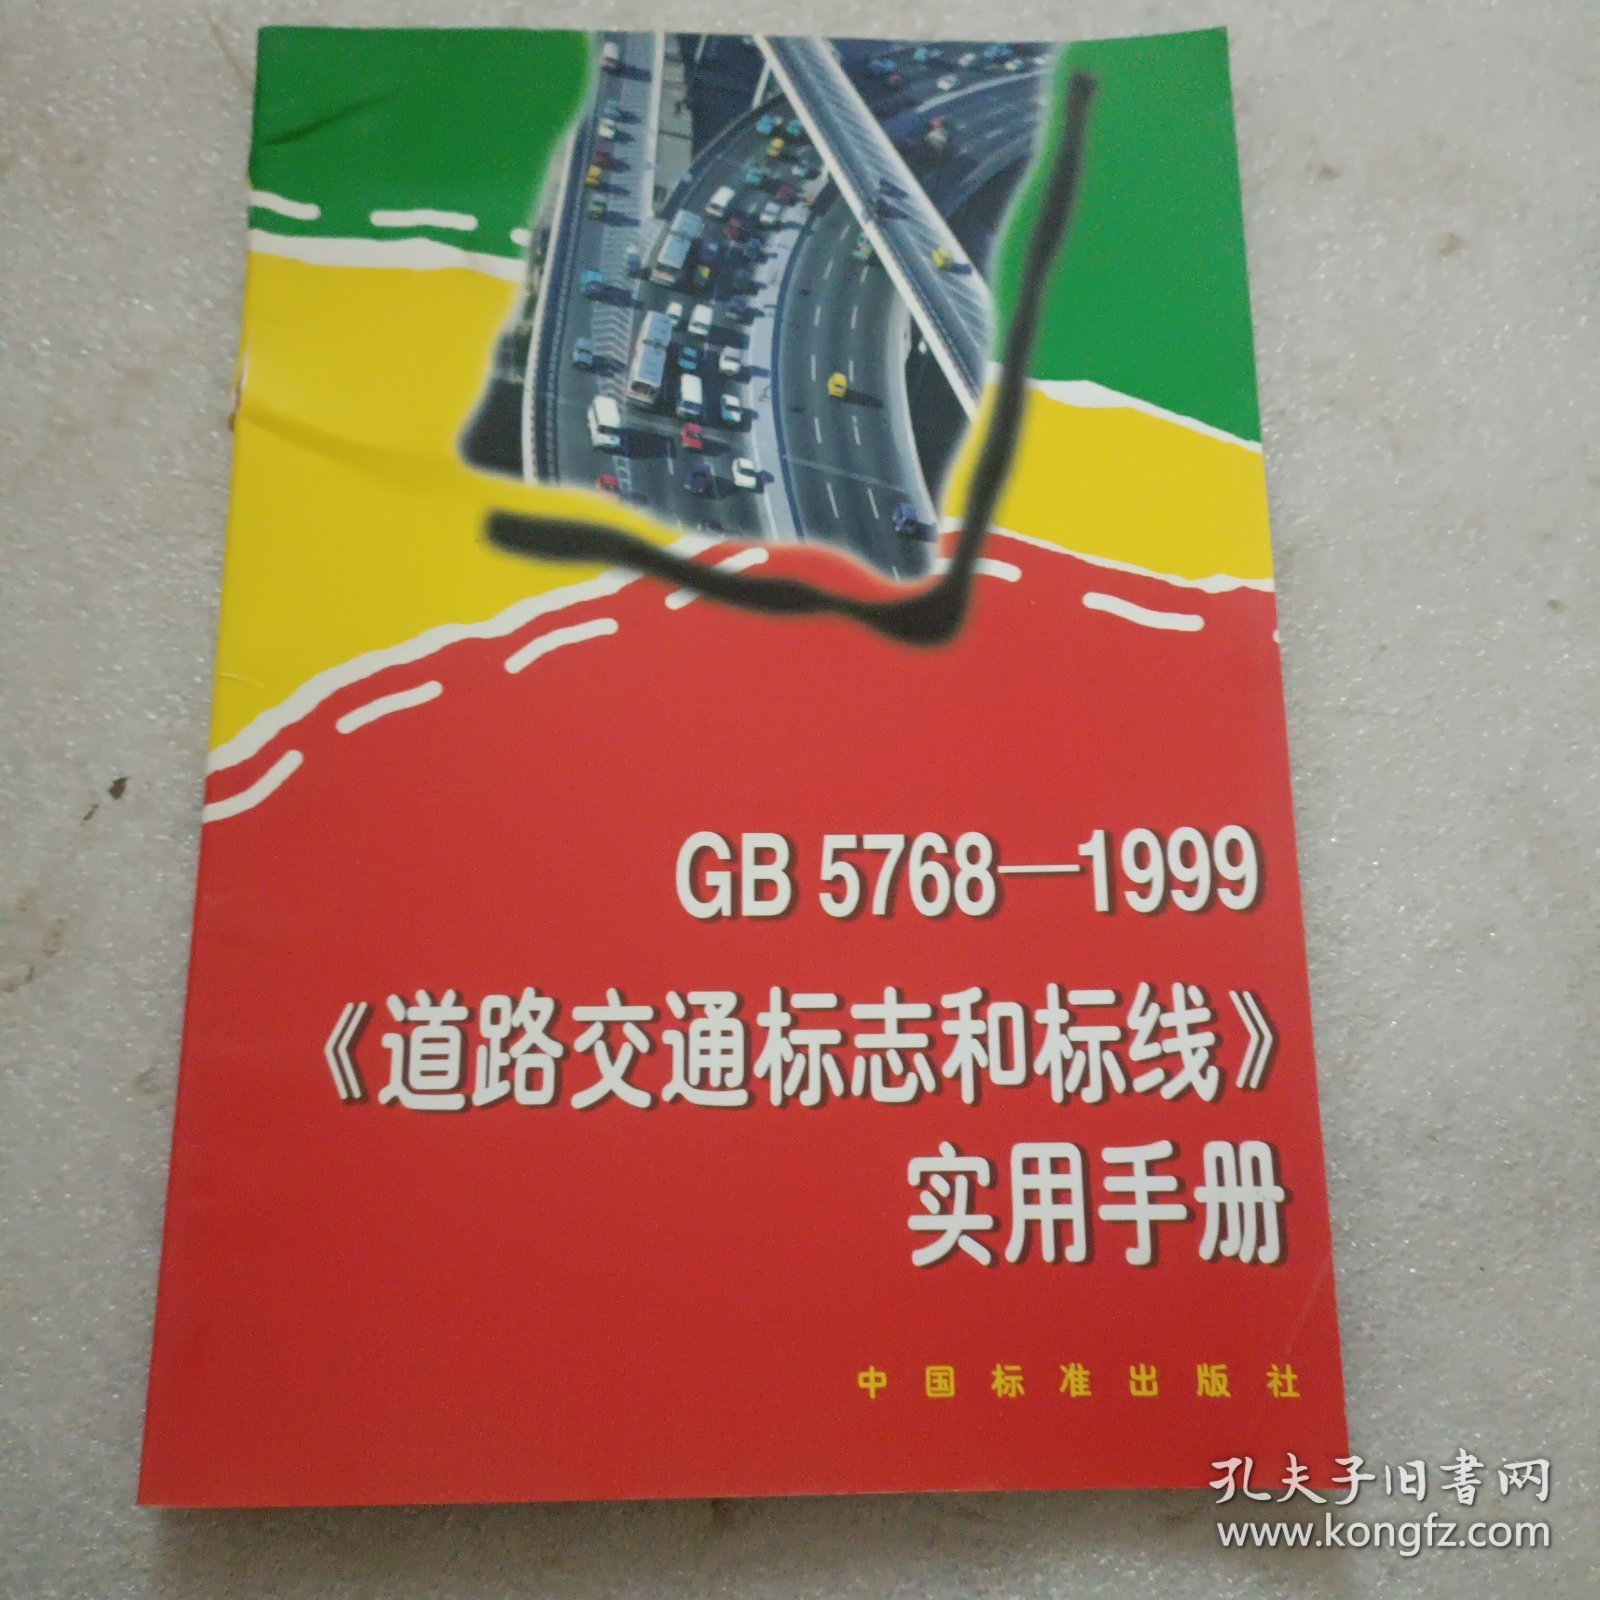 GB 5768-1999《道路交通标志和标线》实用手册